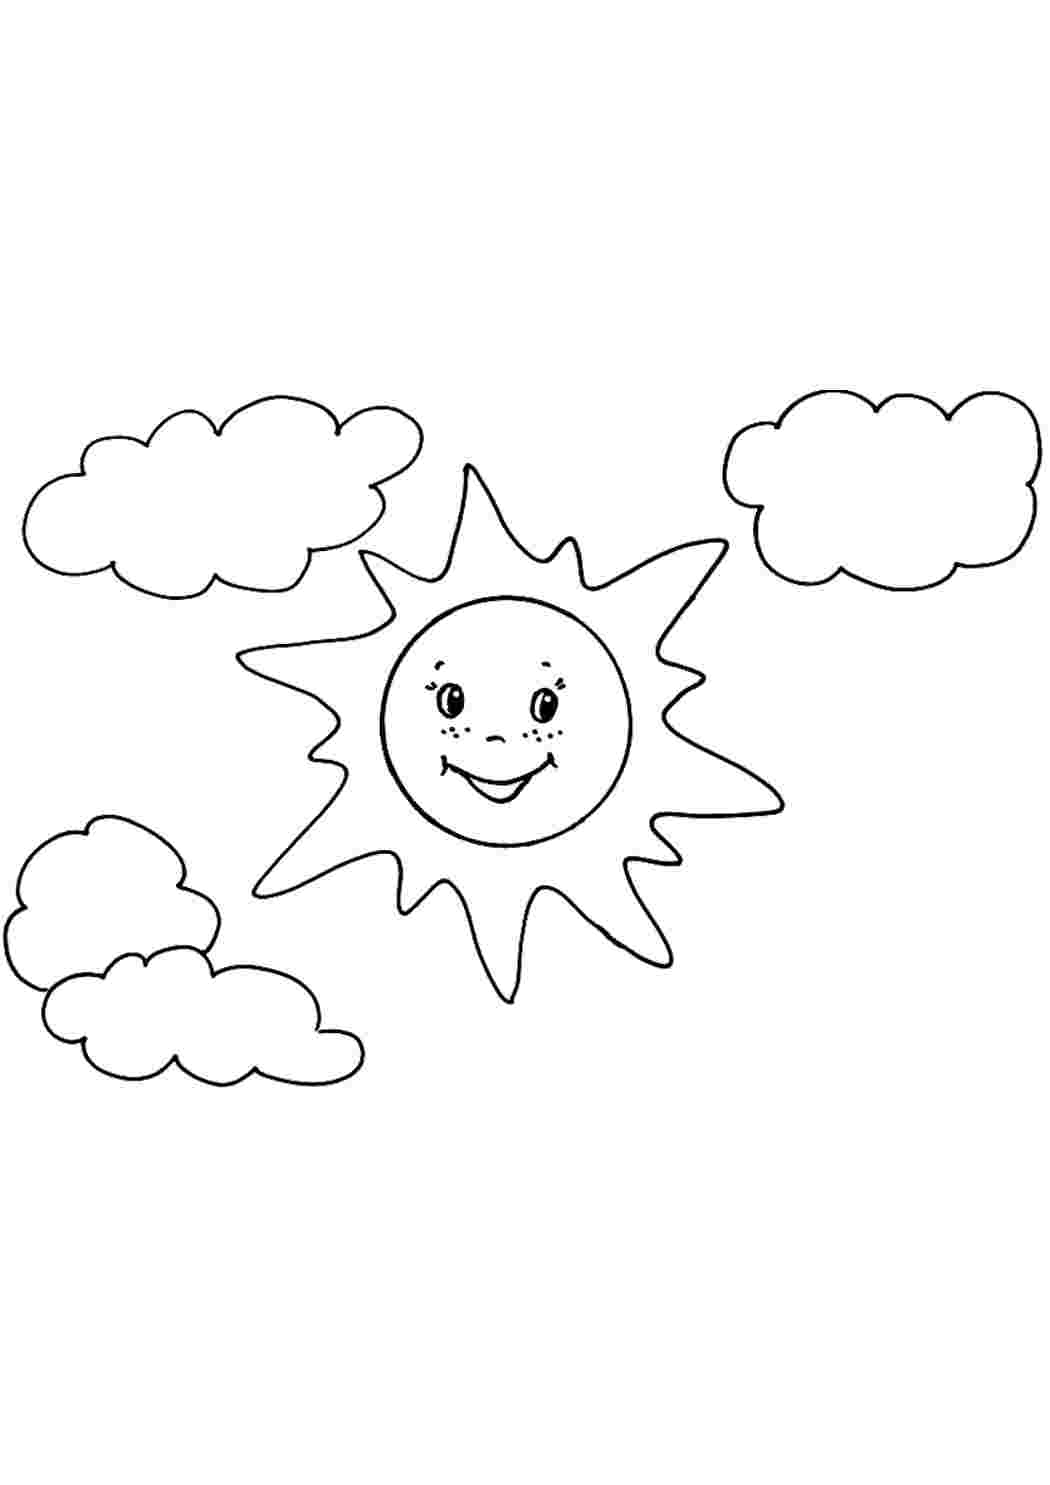 Раскраски Солнышко рисунок (29 шт.) - скачать или распечатать бесплатно #